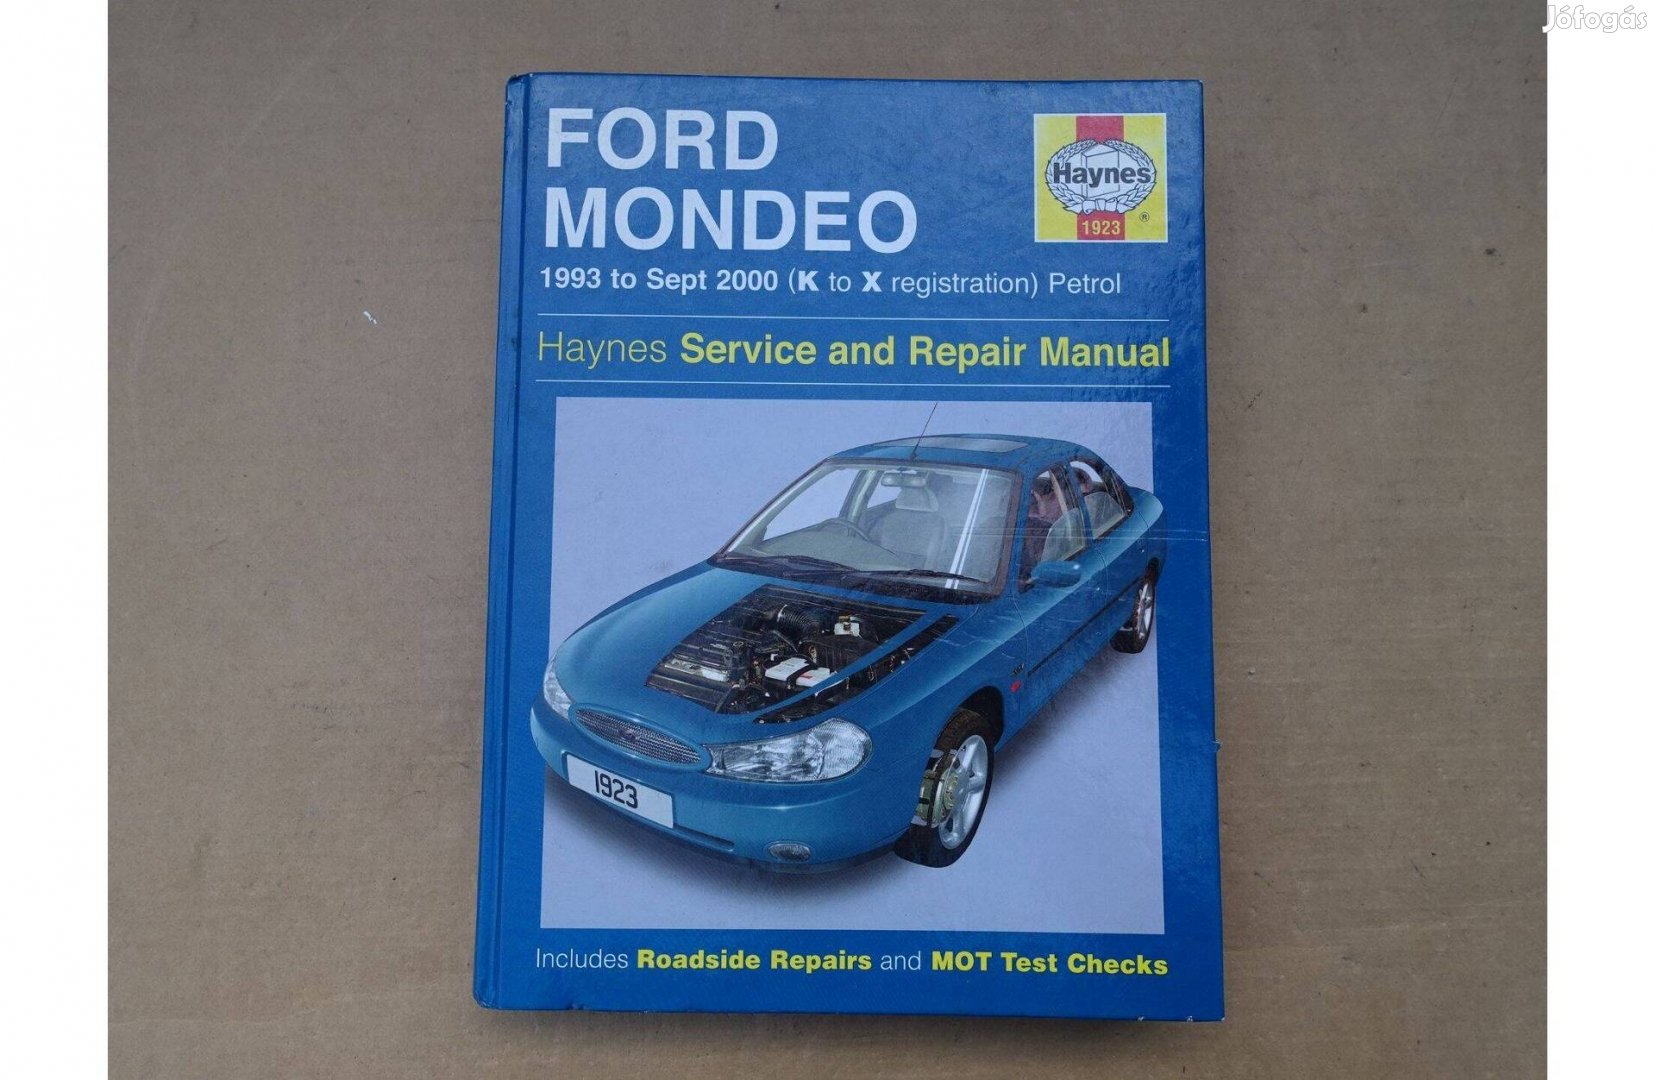 Ford Mondeo Haynes benzines javítási könyv (1993-2000)